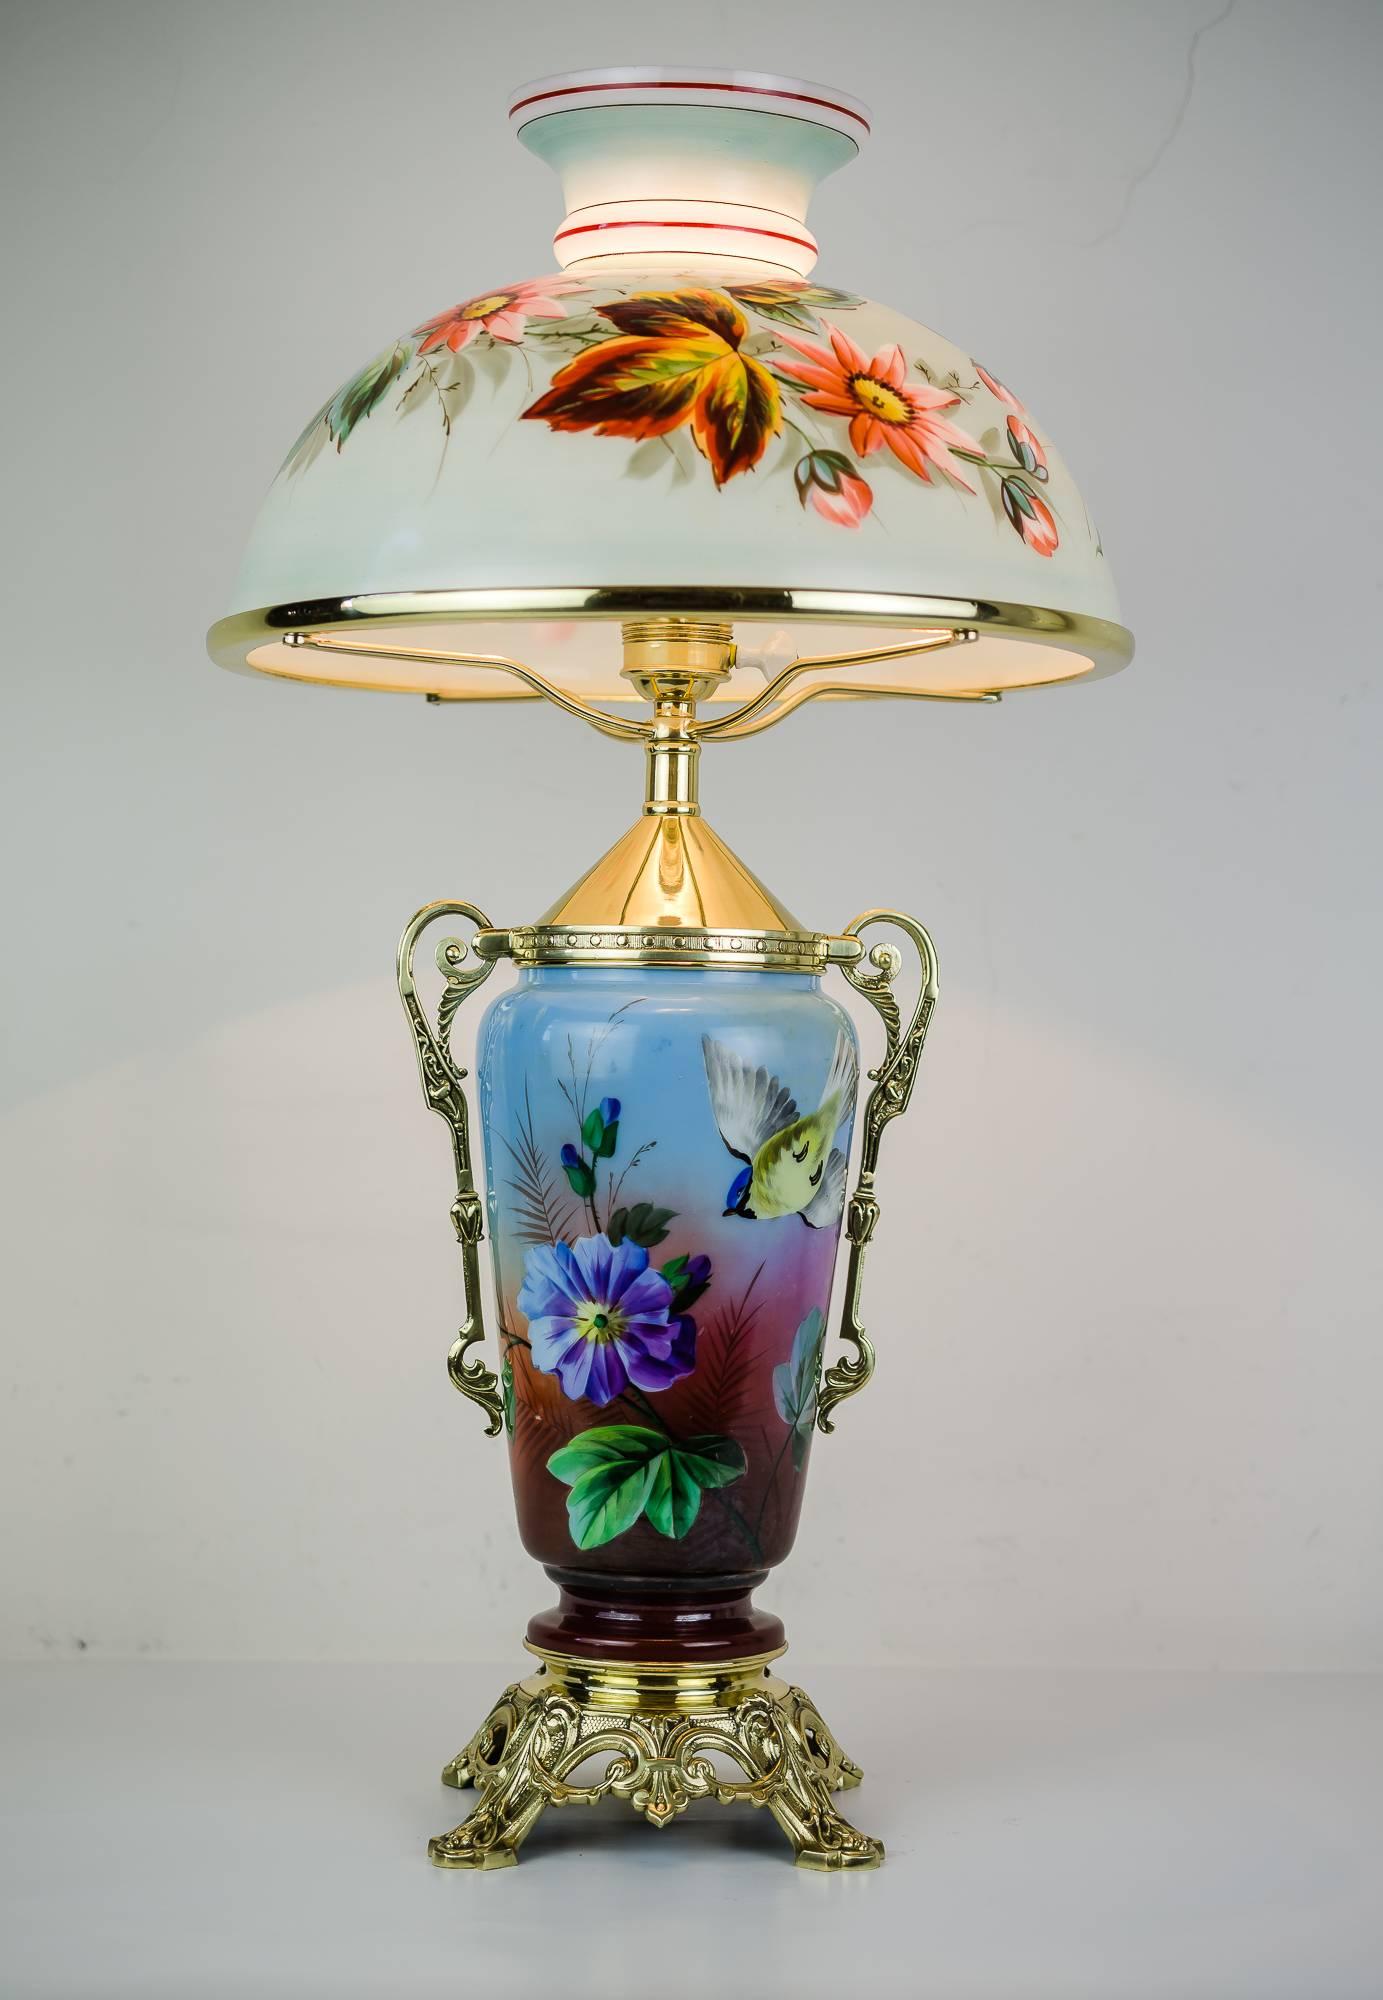 Historistische Tischlampe, ca. 1890er Jahre.
Original Glasschirm.
Messingteile poliert und einbrennlackiert.
 